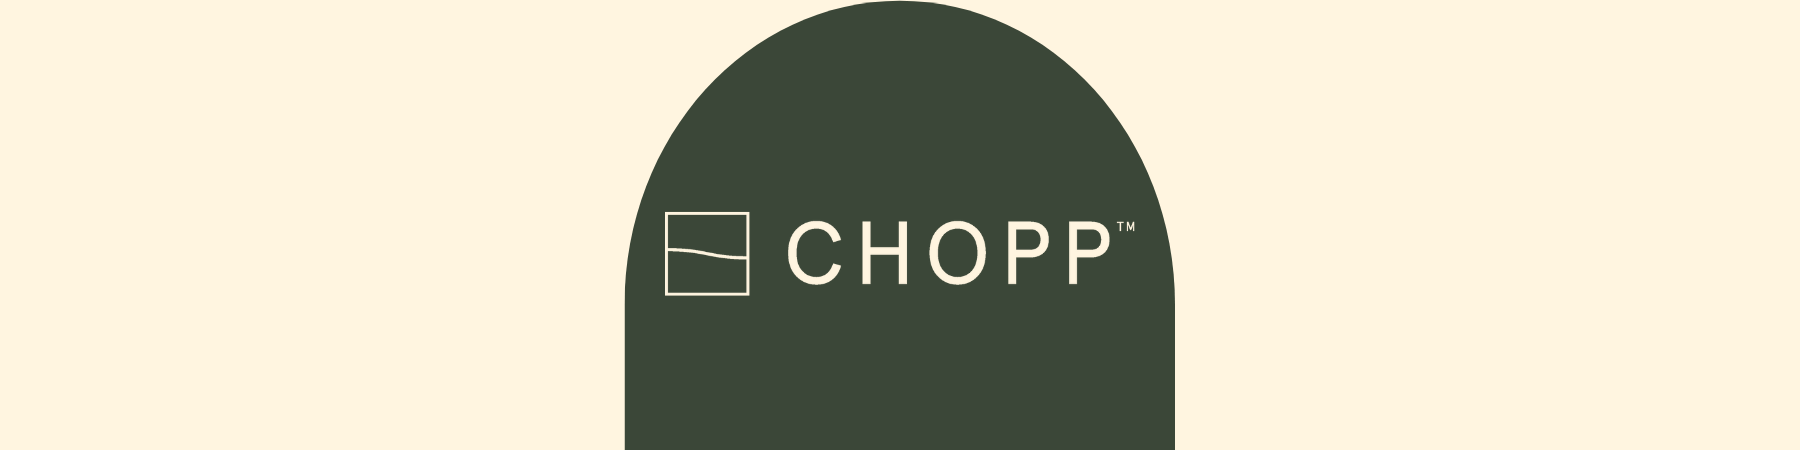 Chopp Haircare - The Local Merchants